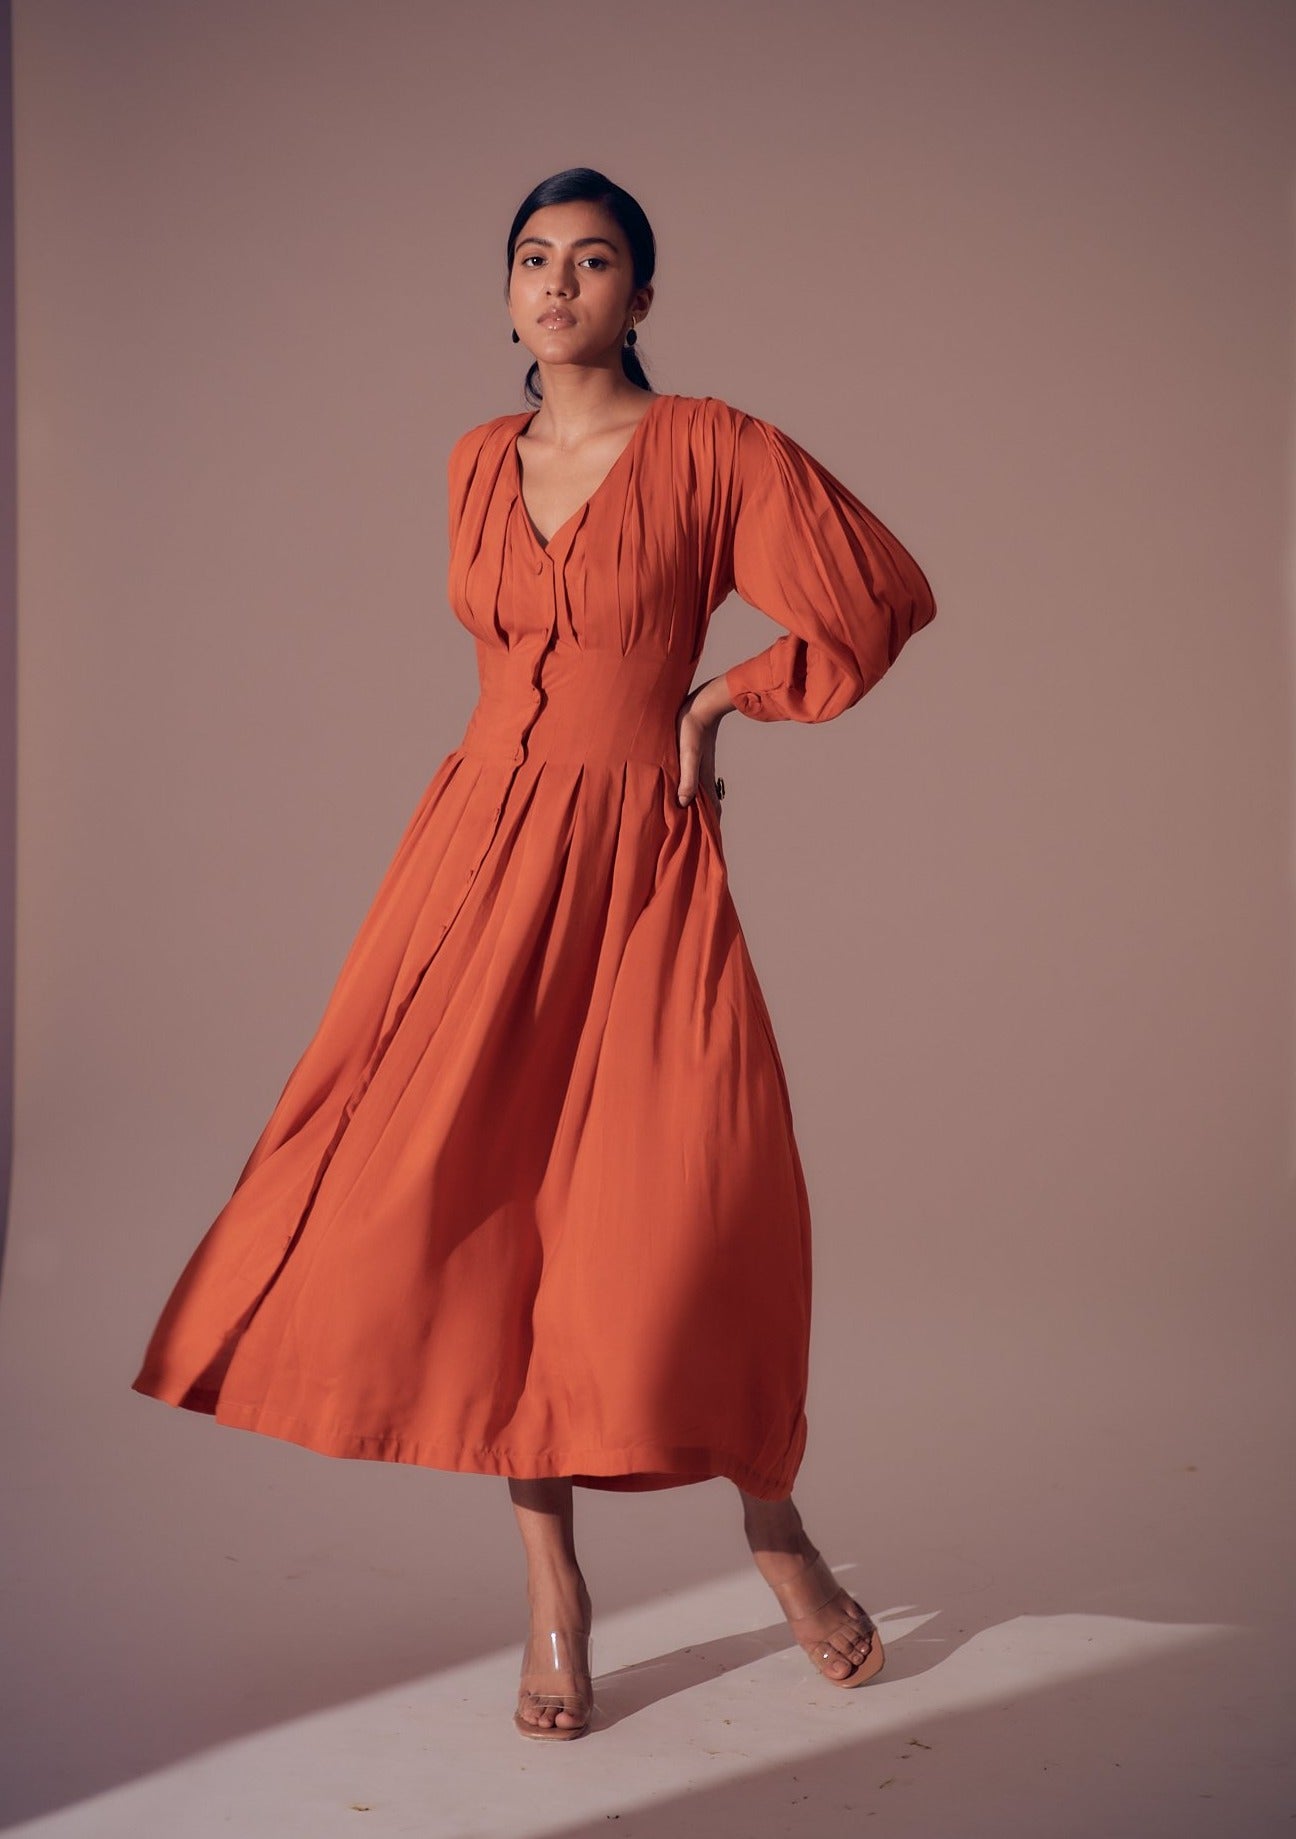 Georgia Dress - Sunset Orange